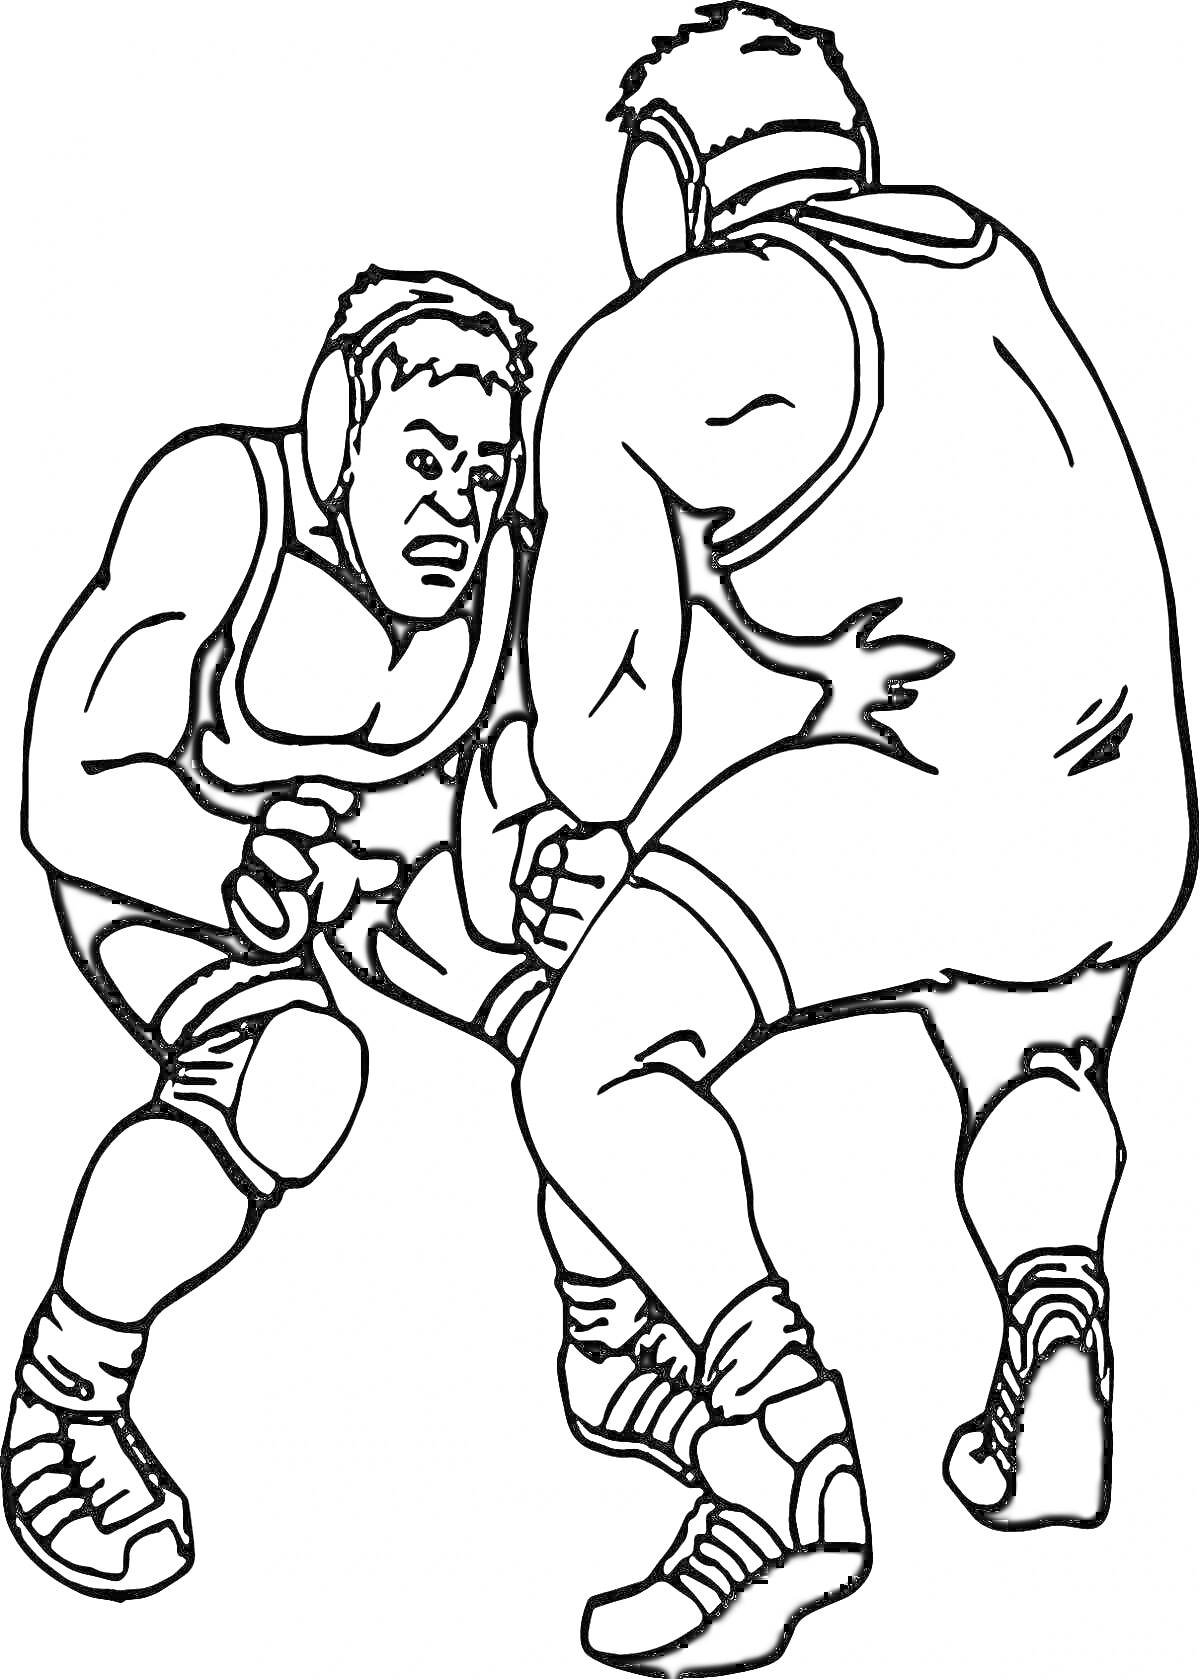 Два борца в схватке, одетые в борцовские трико и шлемы, готовятся к борьбе на ковре